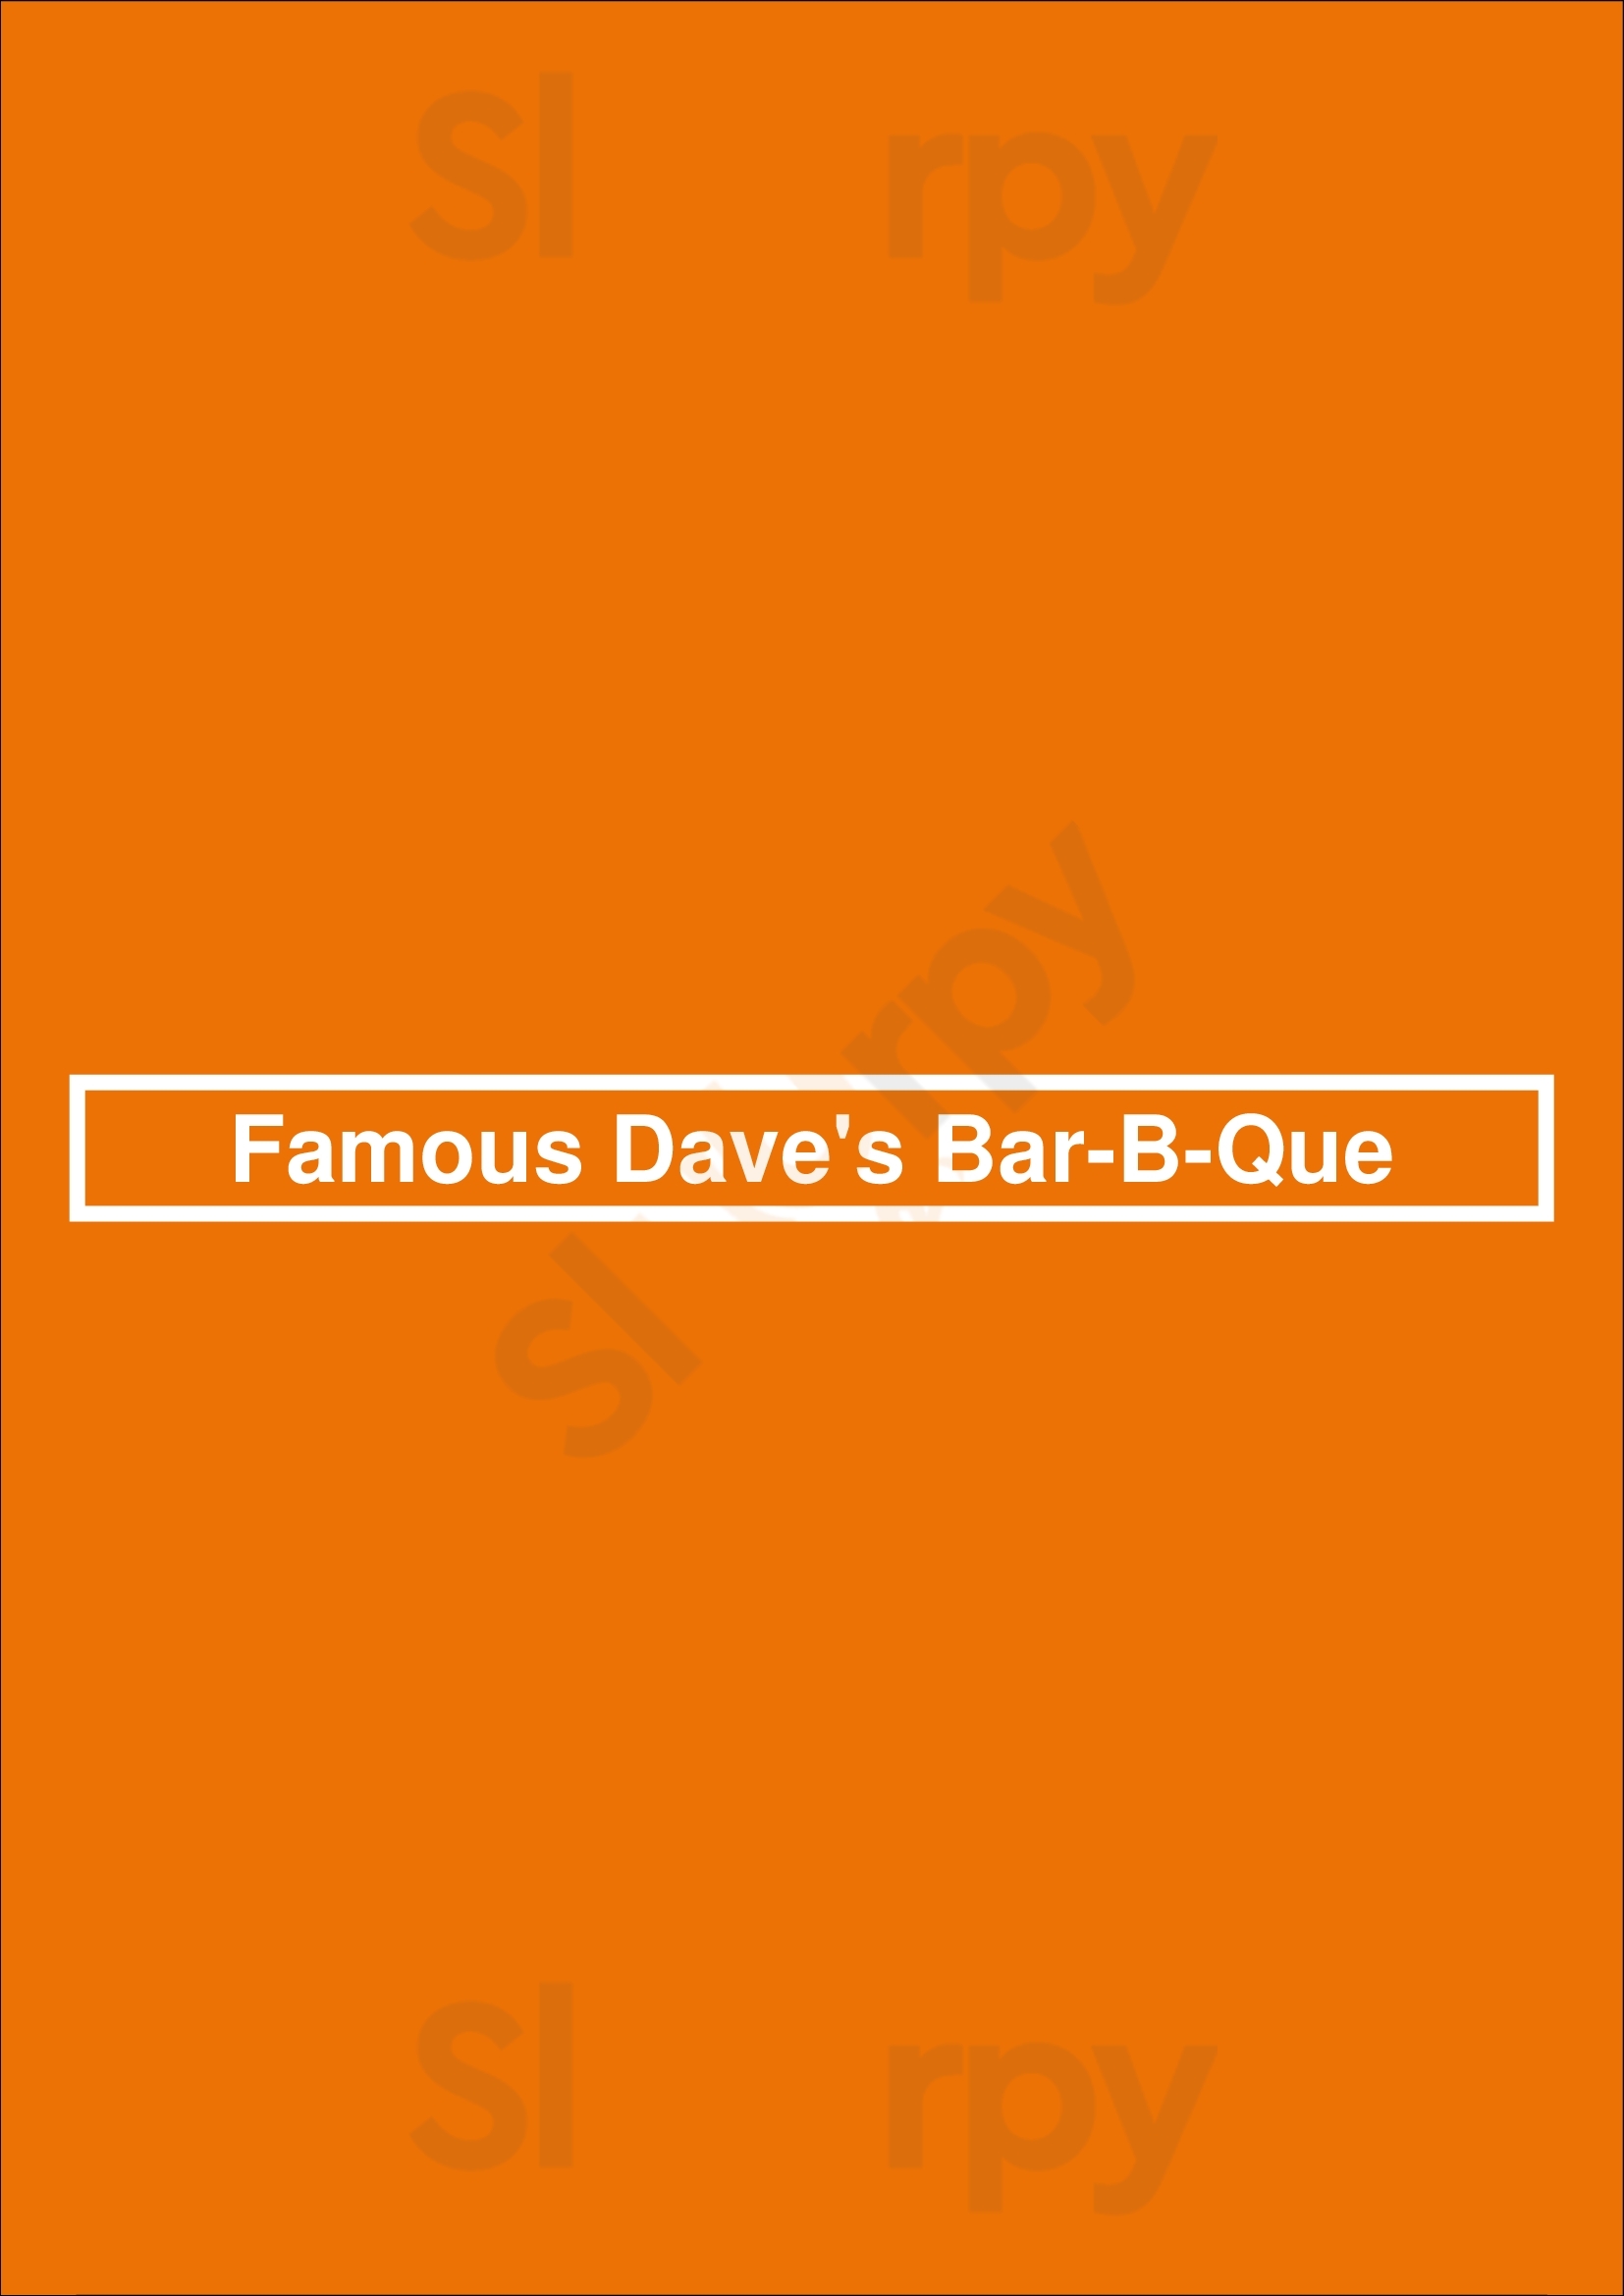 Famous Dave's Bar-b-que Addison Menu - 1